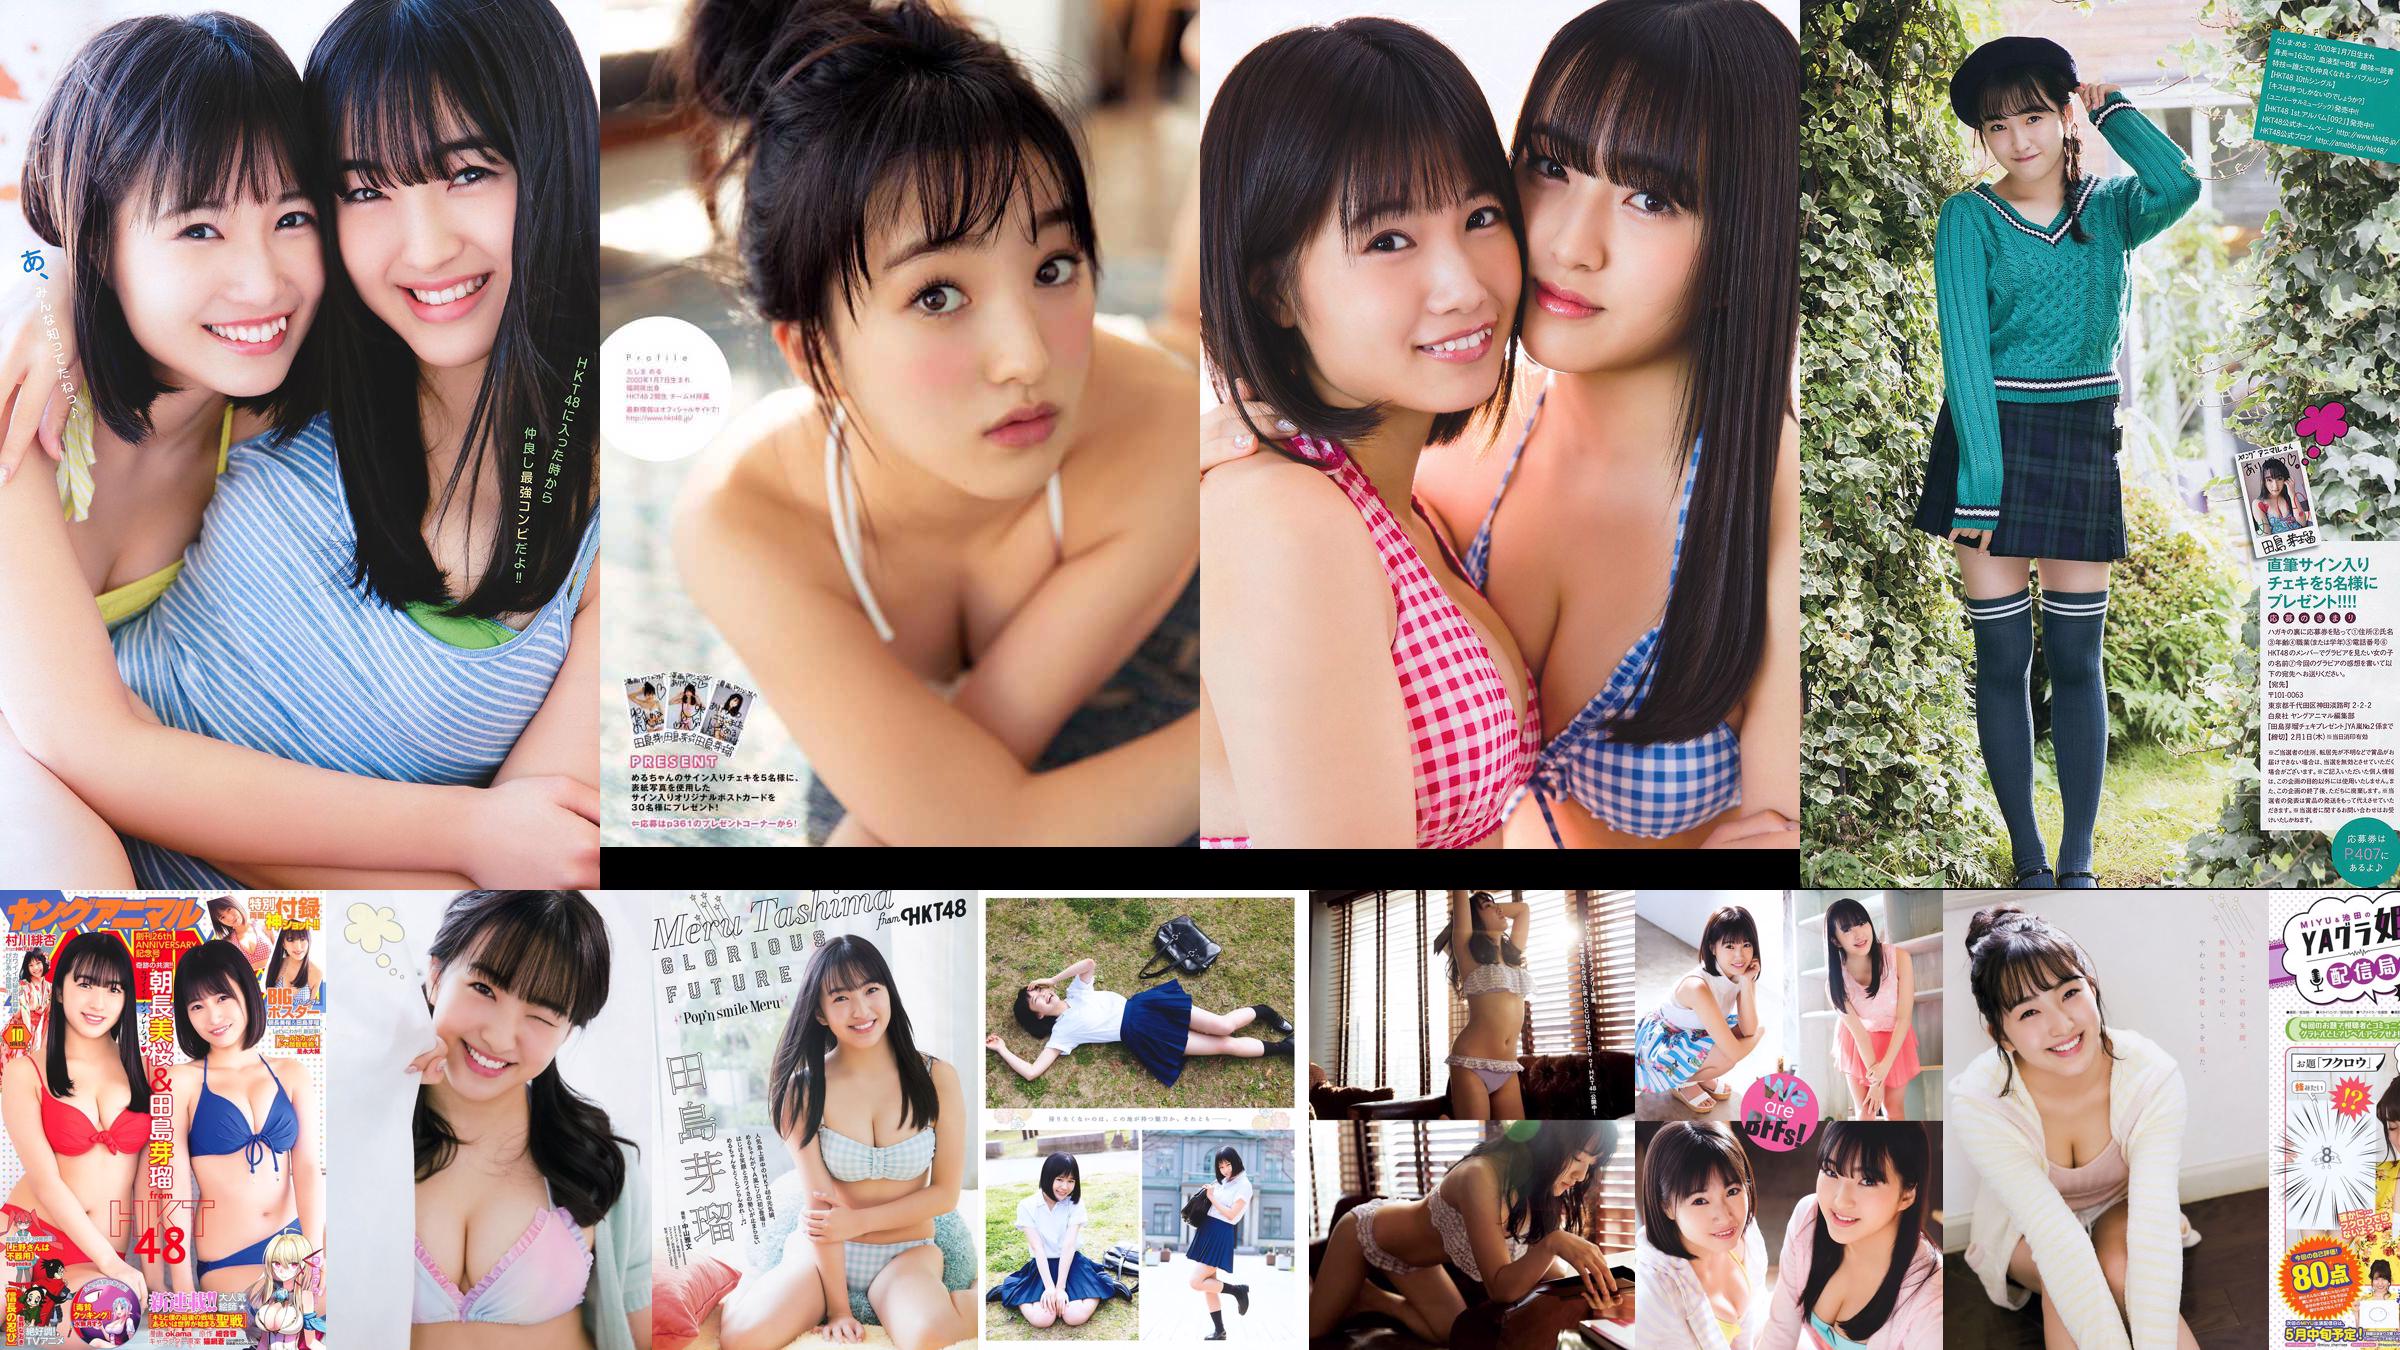 Nana Ayano Yuka Someya [Young Animal Arashi Special Edition] No.06 2015 Ảnh No.86eb90 Trang 2